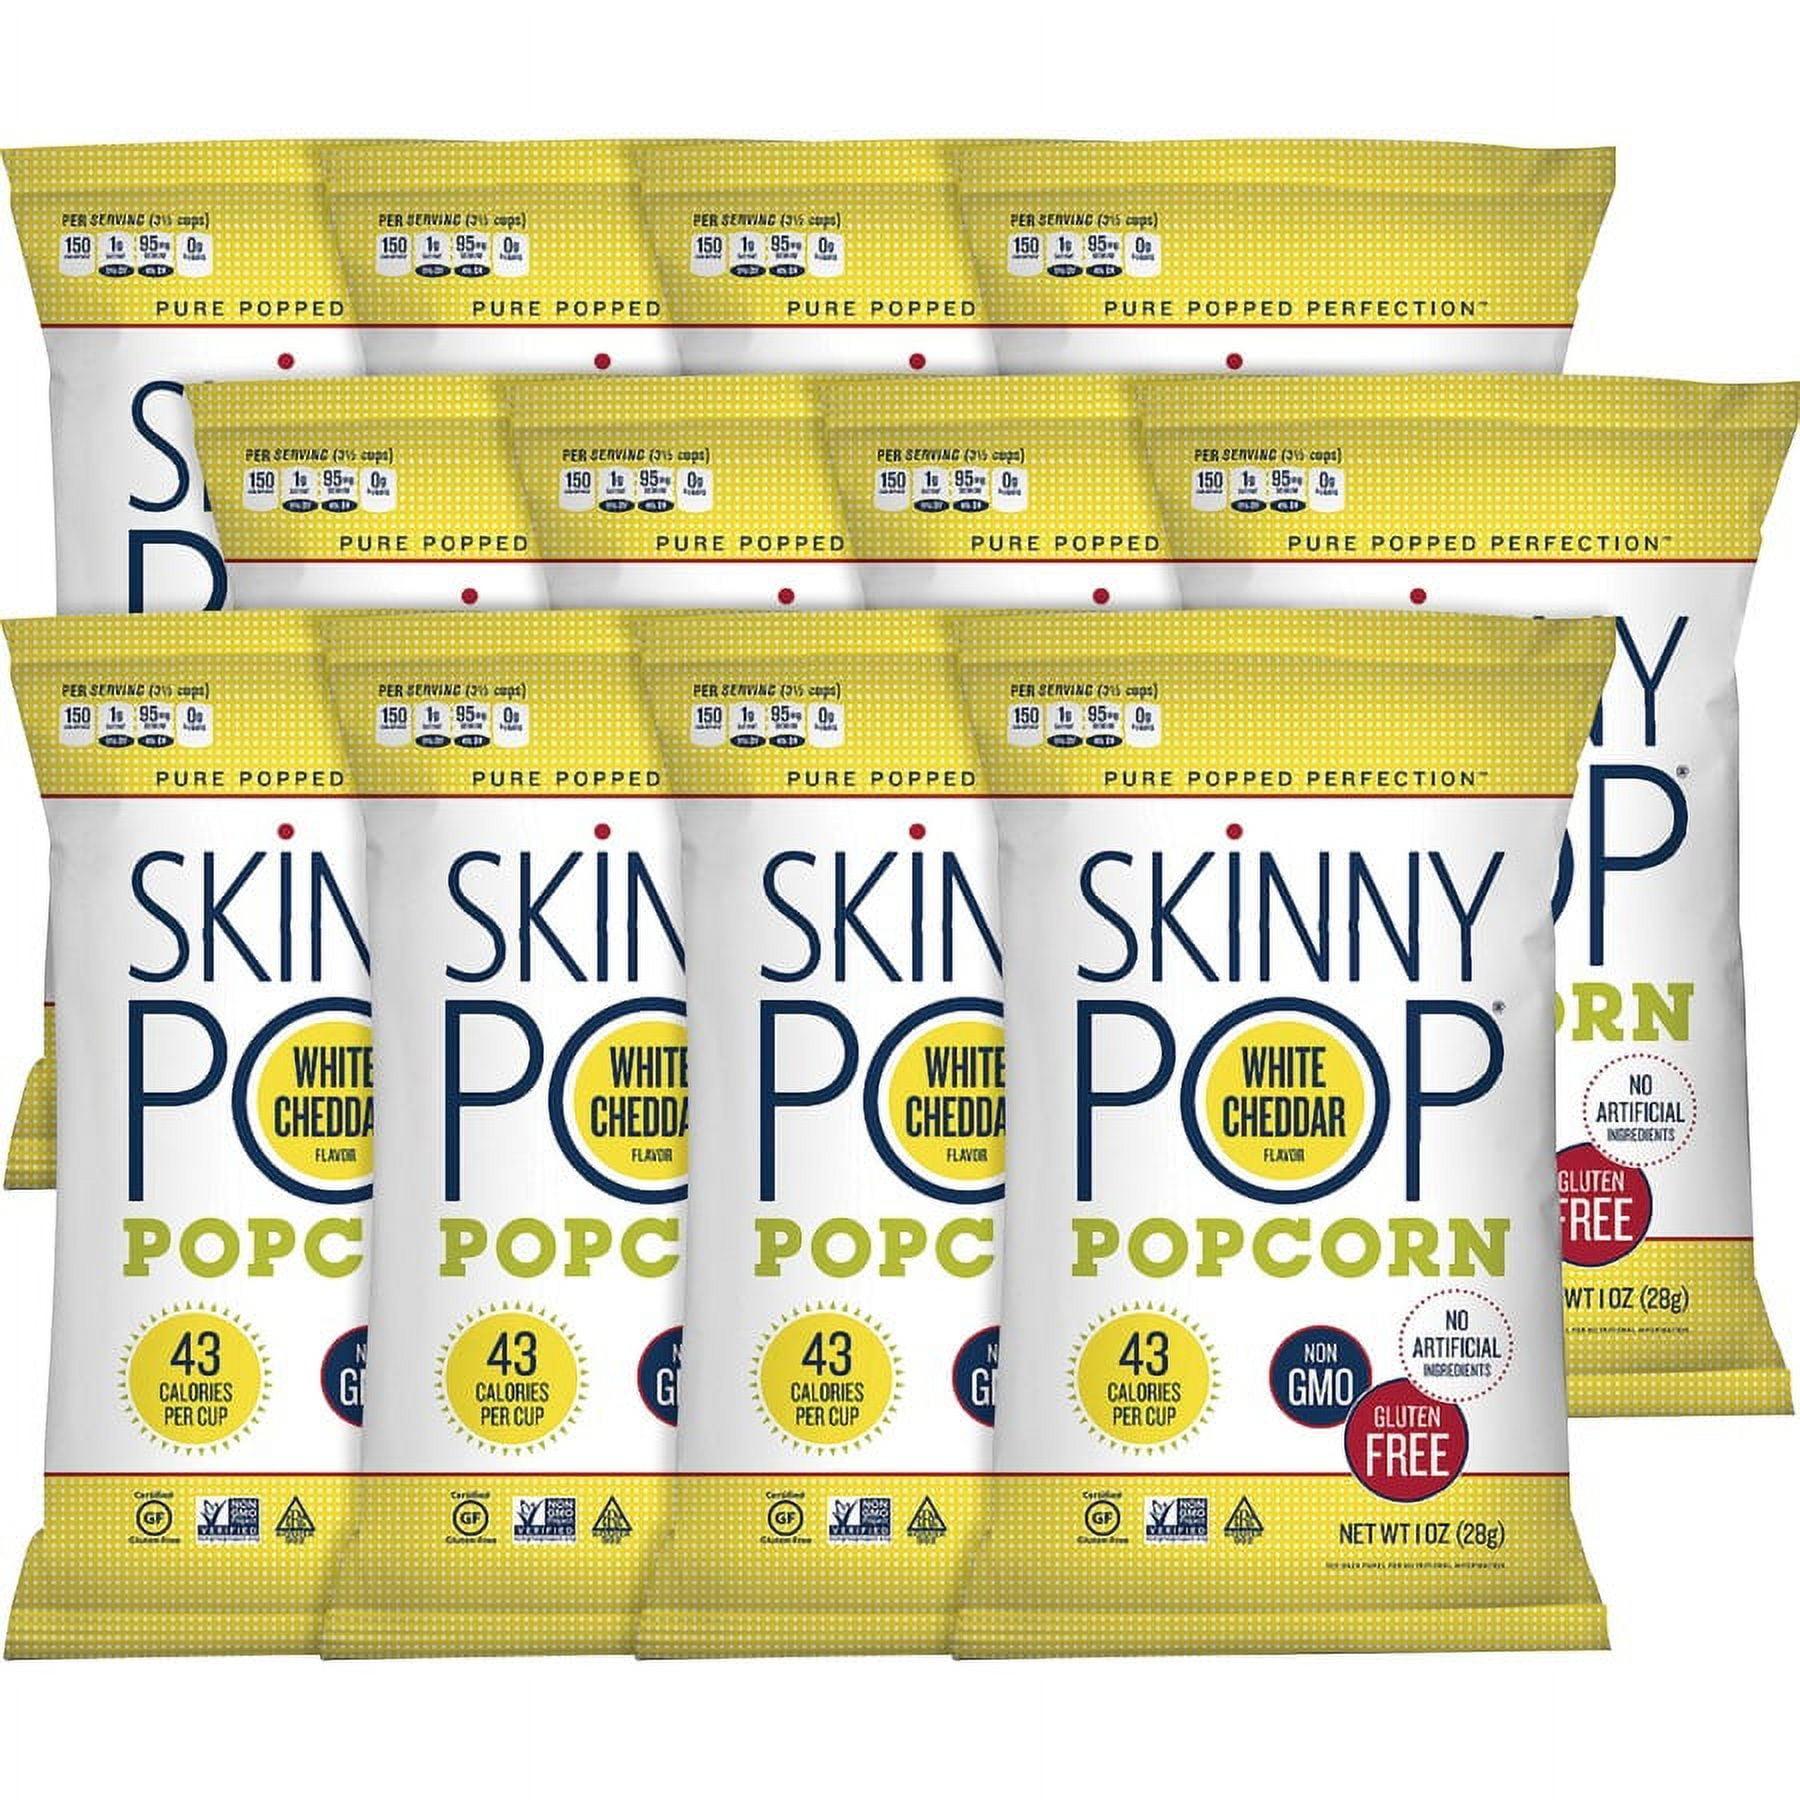 Skinnypop Popcorn Original 1oz - Order Online for Delivery or